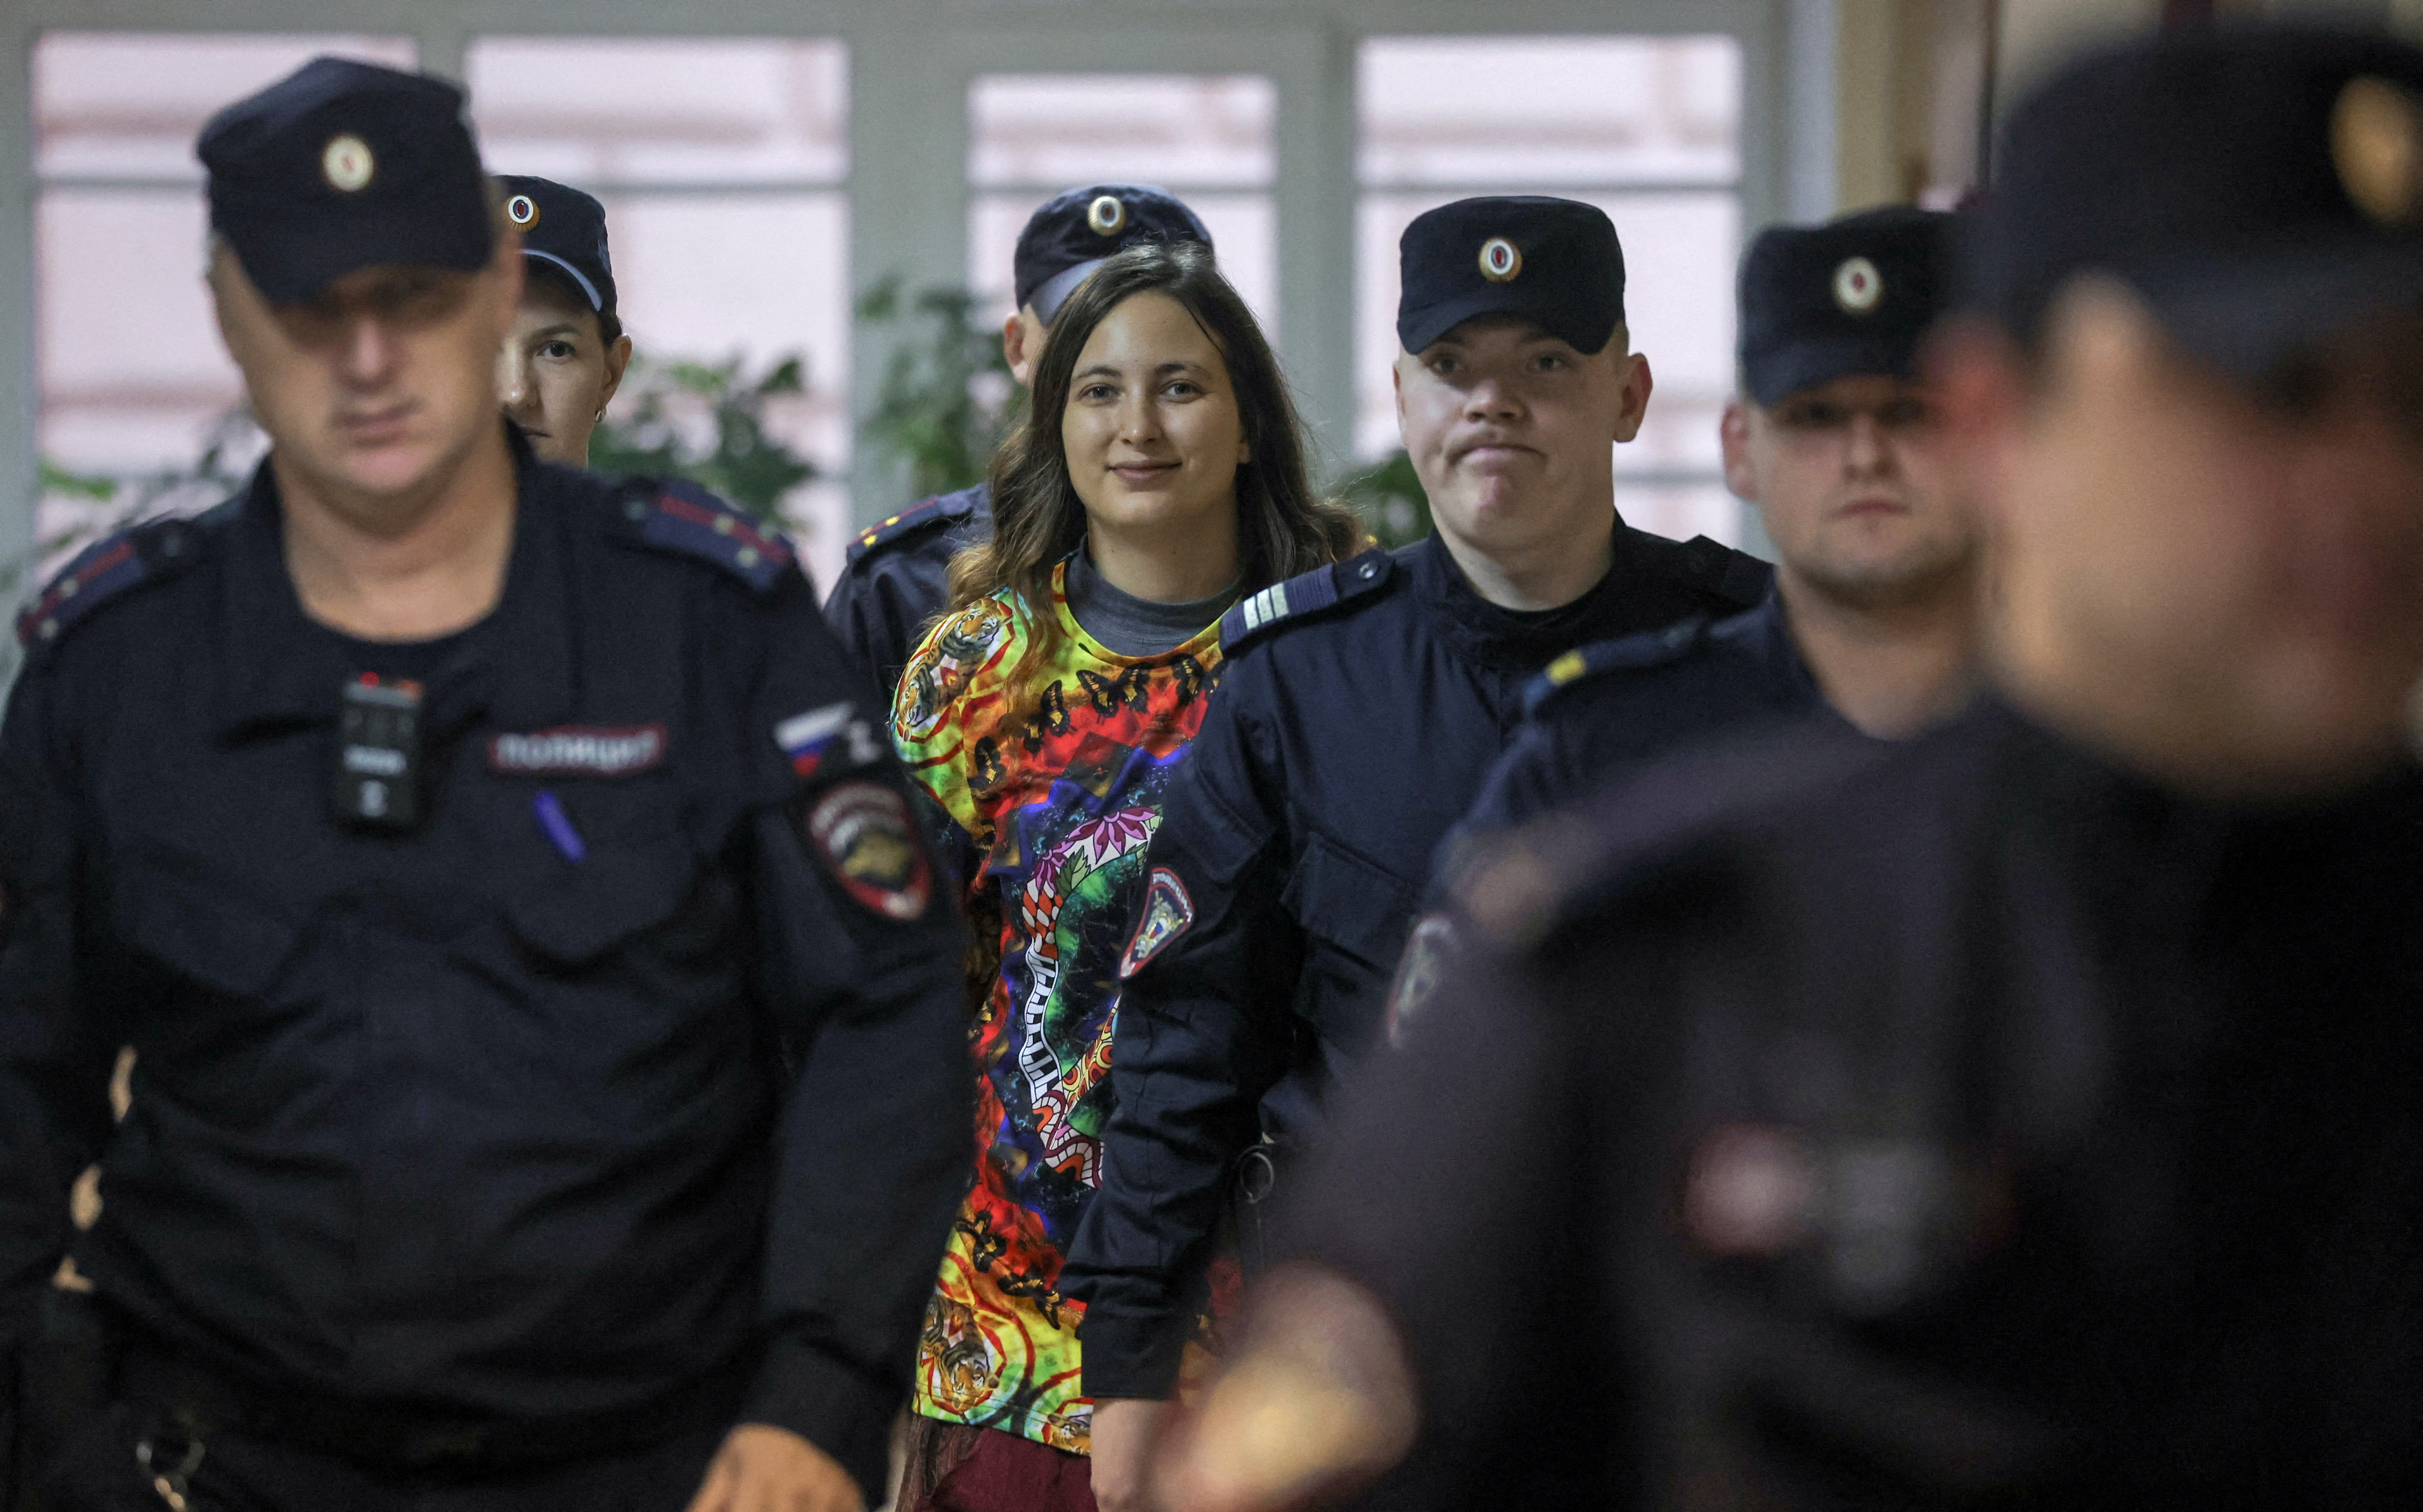 Der wegen Diskreditierung der russischen Armee angeklagte Künstler Skochilenko erscheint vor Gericht